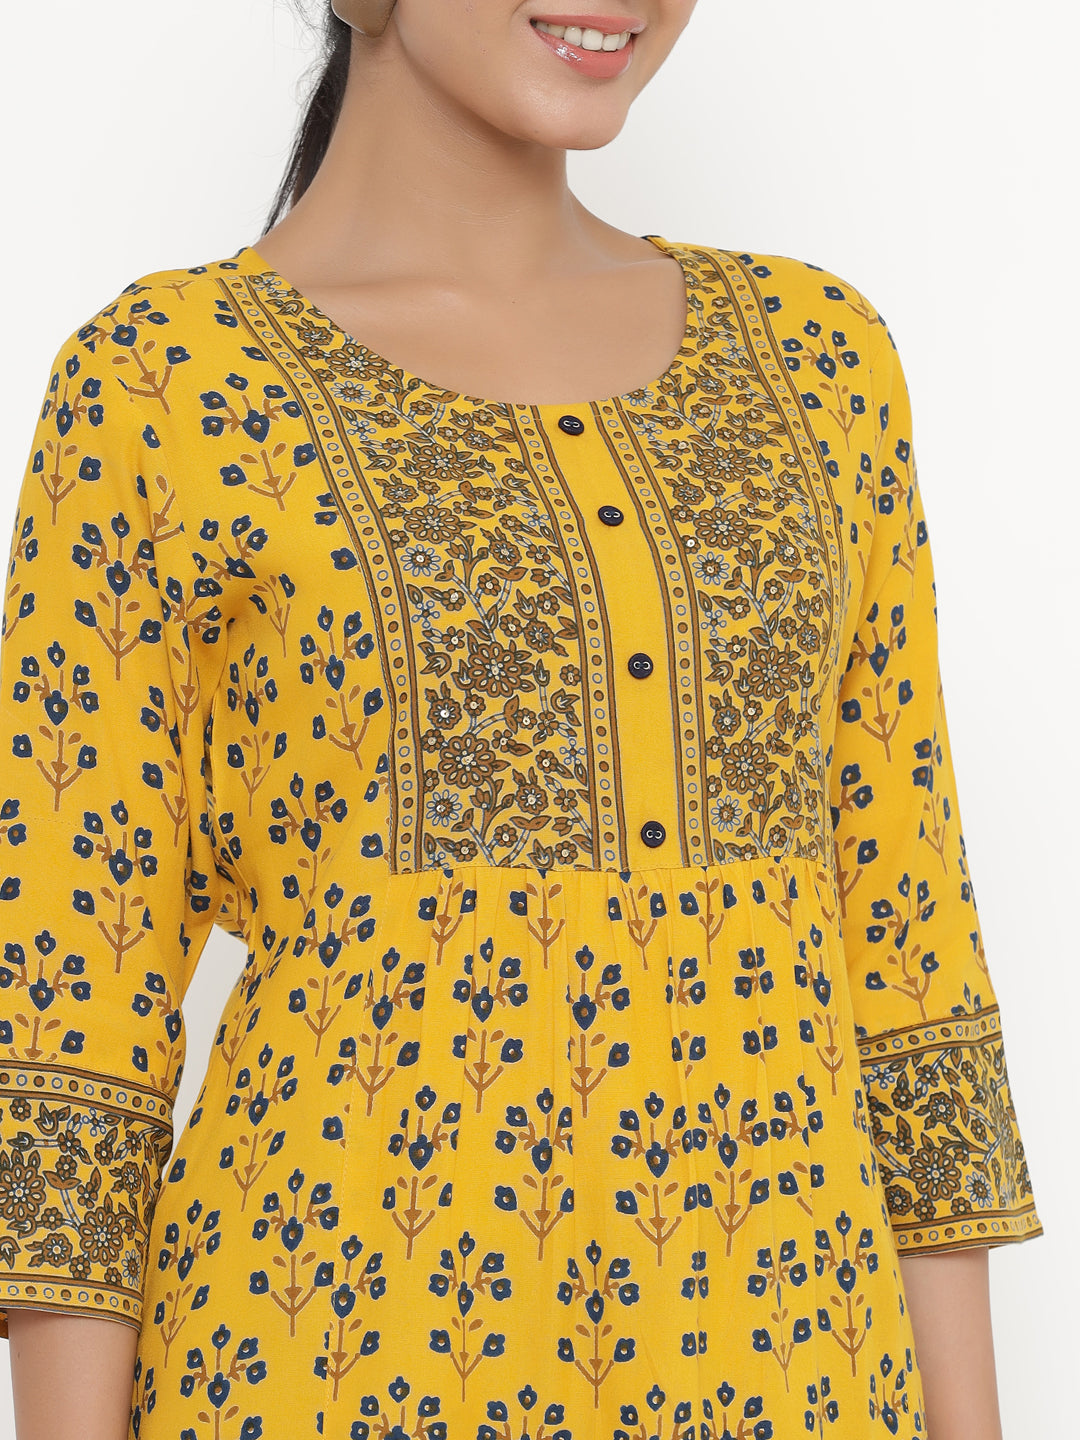 Women's Self Desgin Rayon Fabric Short Kurta Mustard Color - Kipek